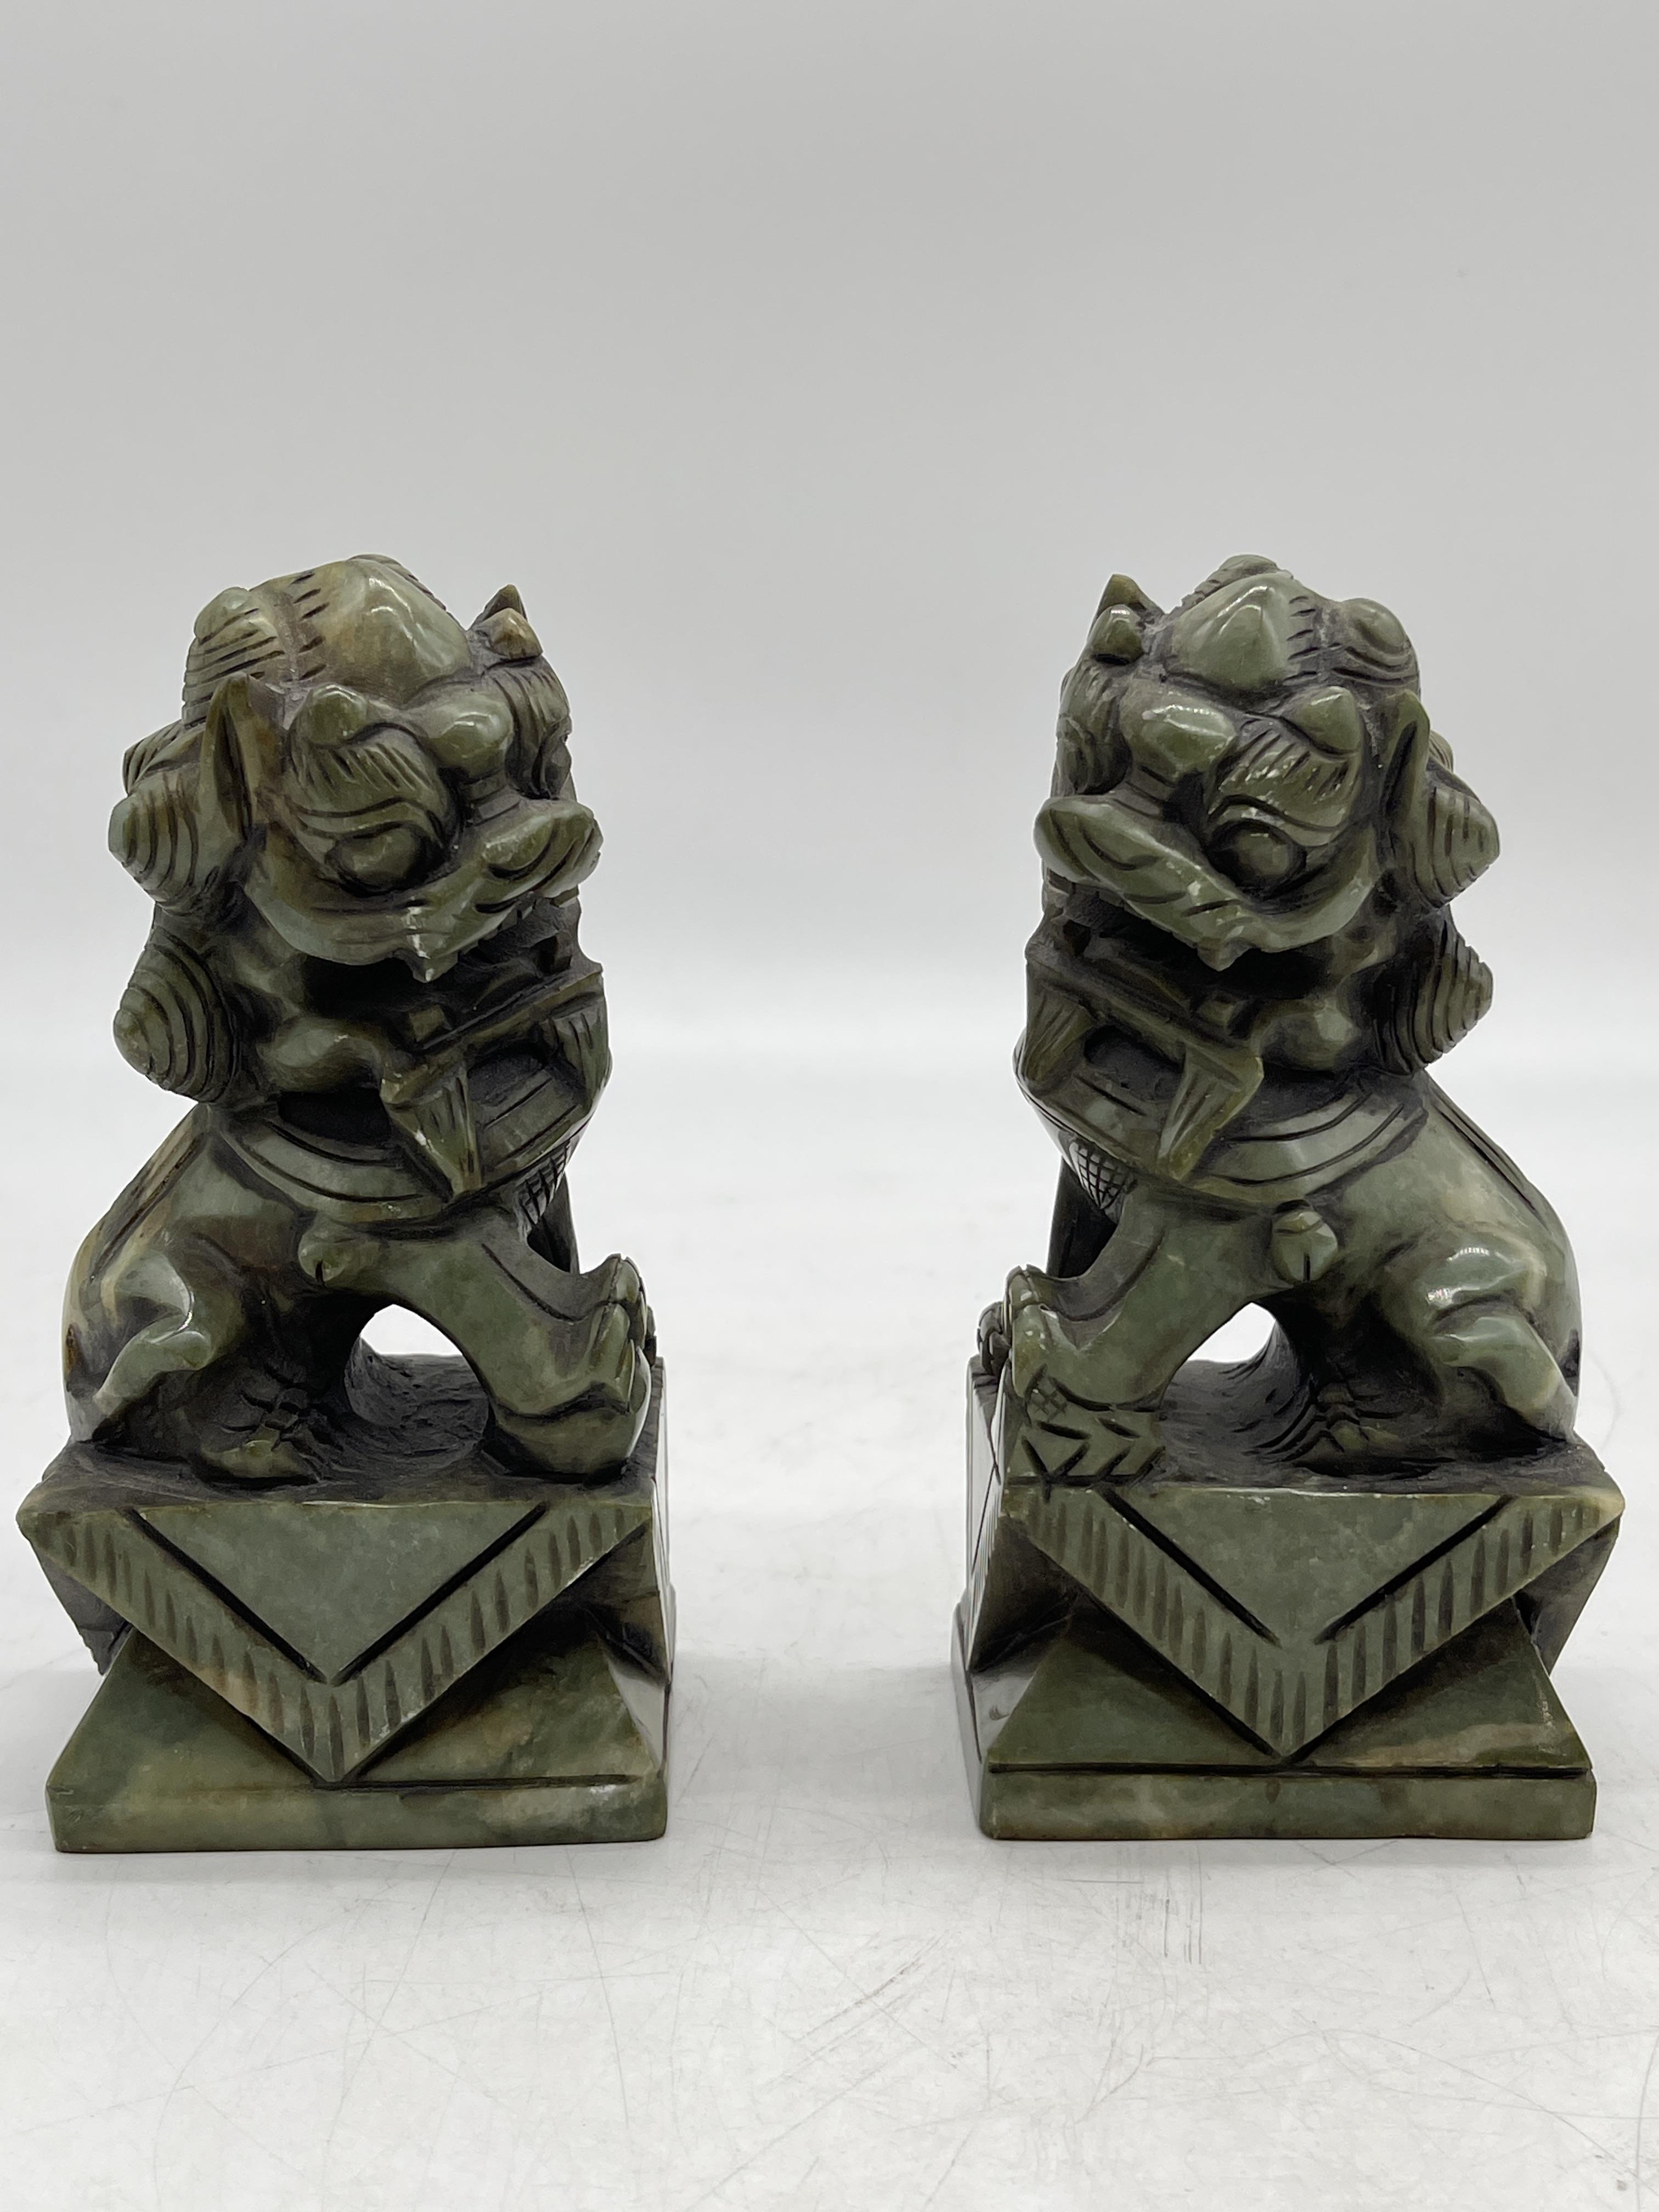 Pair of Oriental Chinese Carved Jade Foo Dog Figur